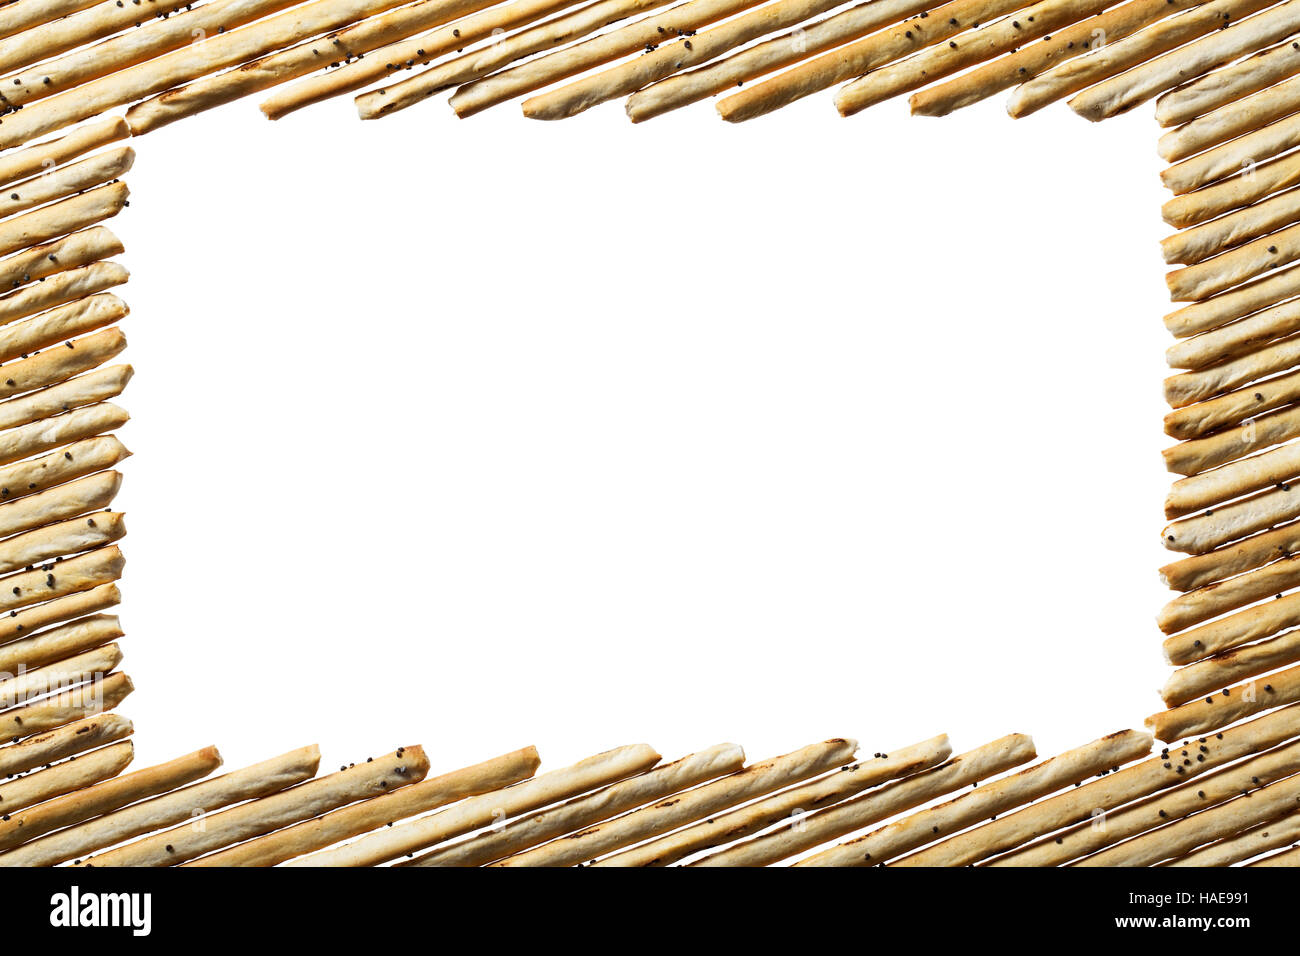 Rahmen des Brot-sticks isolierten auf weißen Hintergrund. Stockfoto